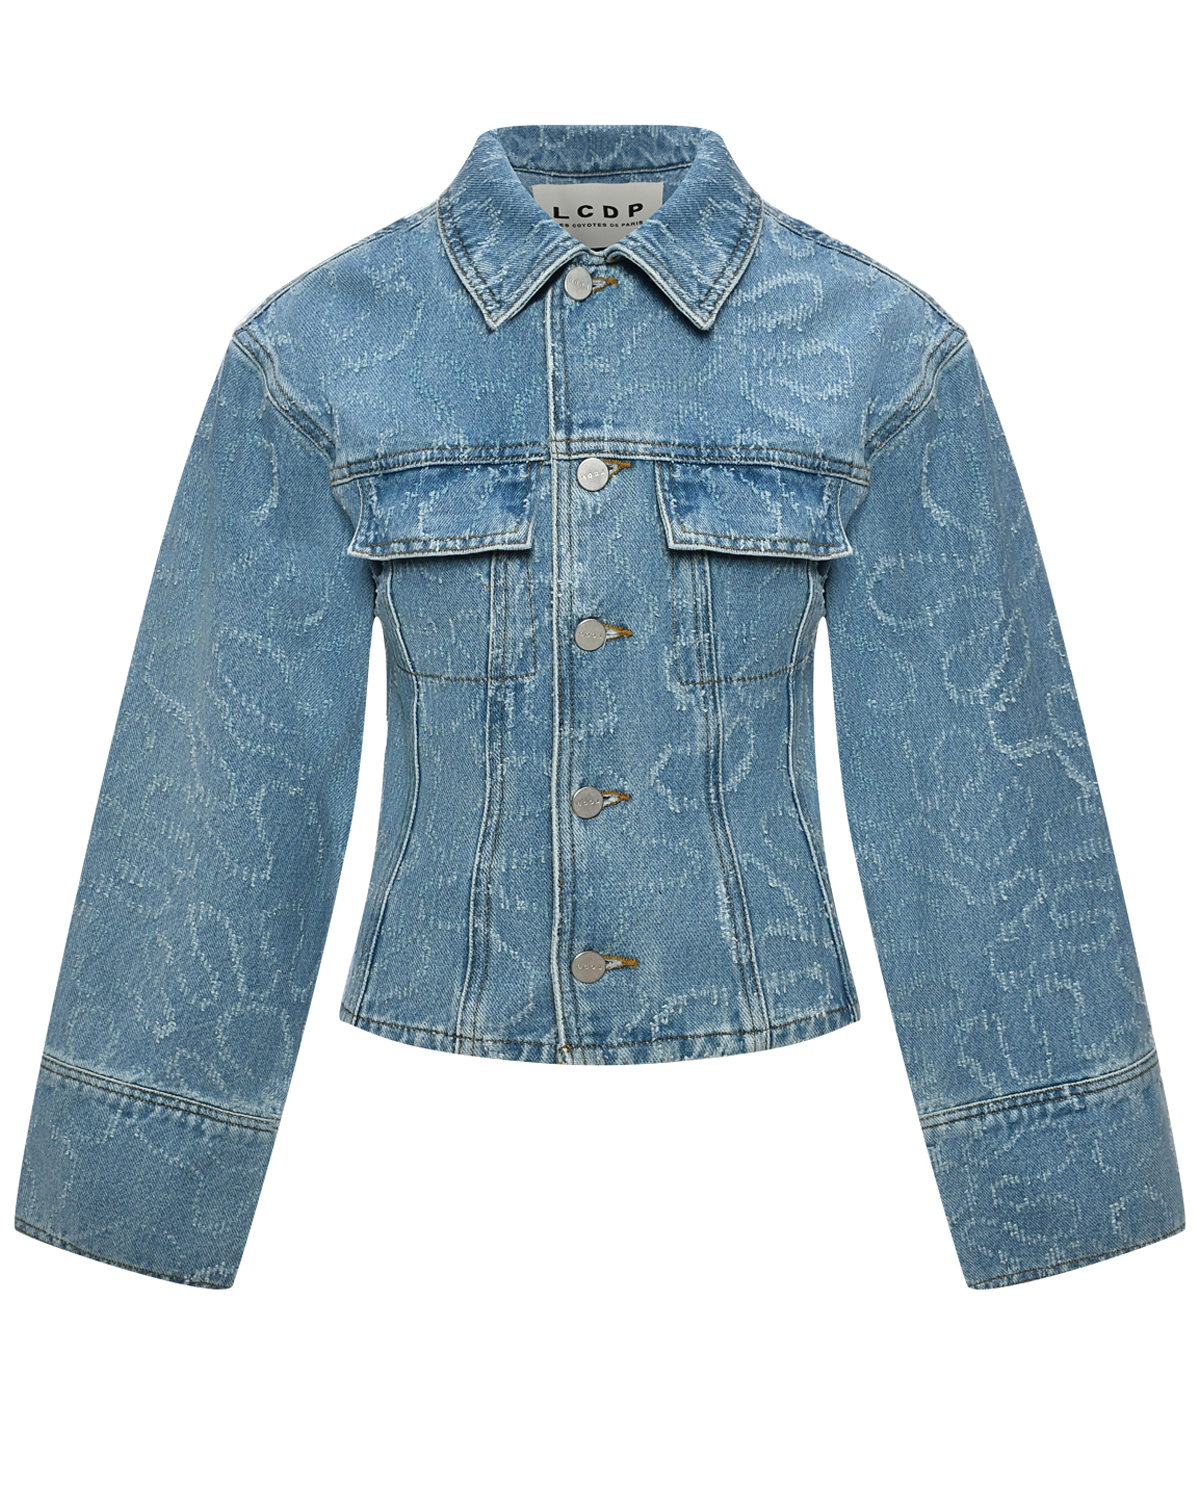 Джинсовая куртка со сплошным узором Les Coyotes de Paris, размер 164, цвет голубой